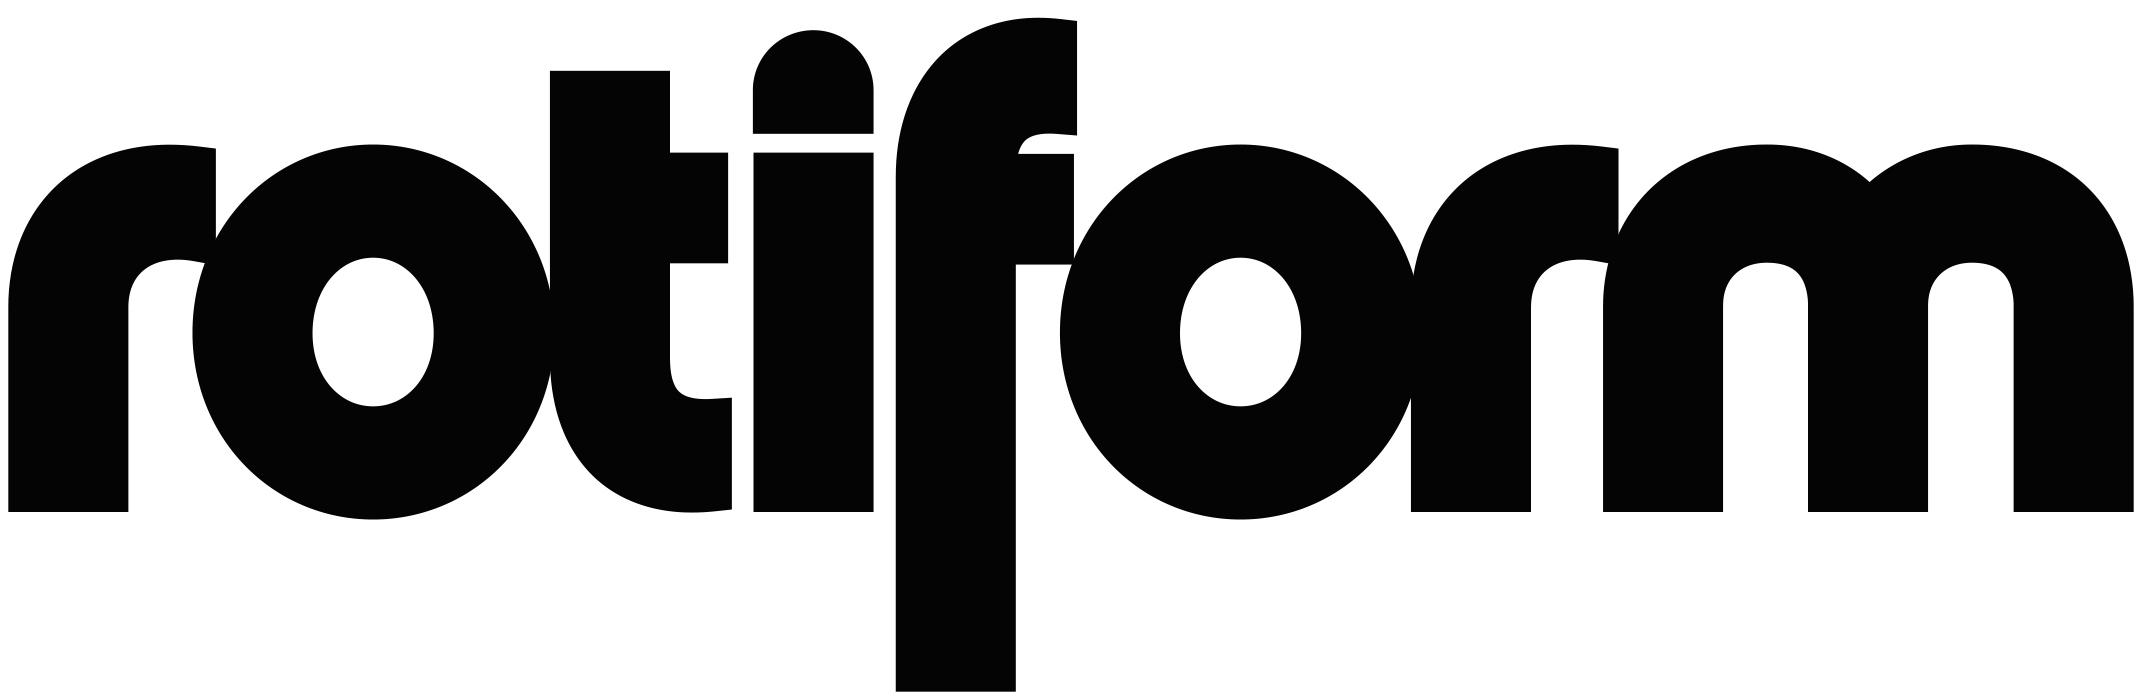 Rotiform Logo - ROTIFORM Logo Emblems for GTA 5 / Grand Theft Auto V